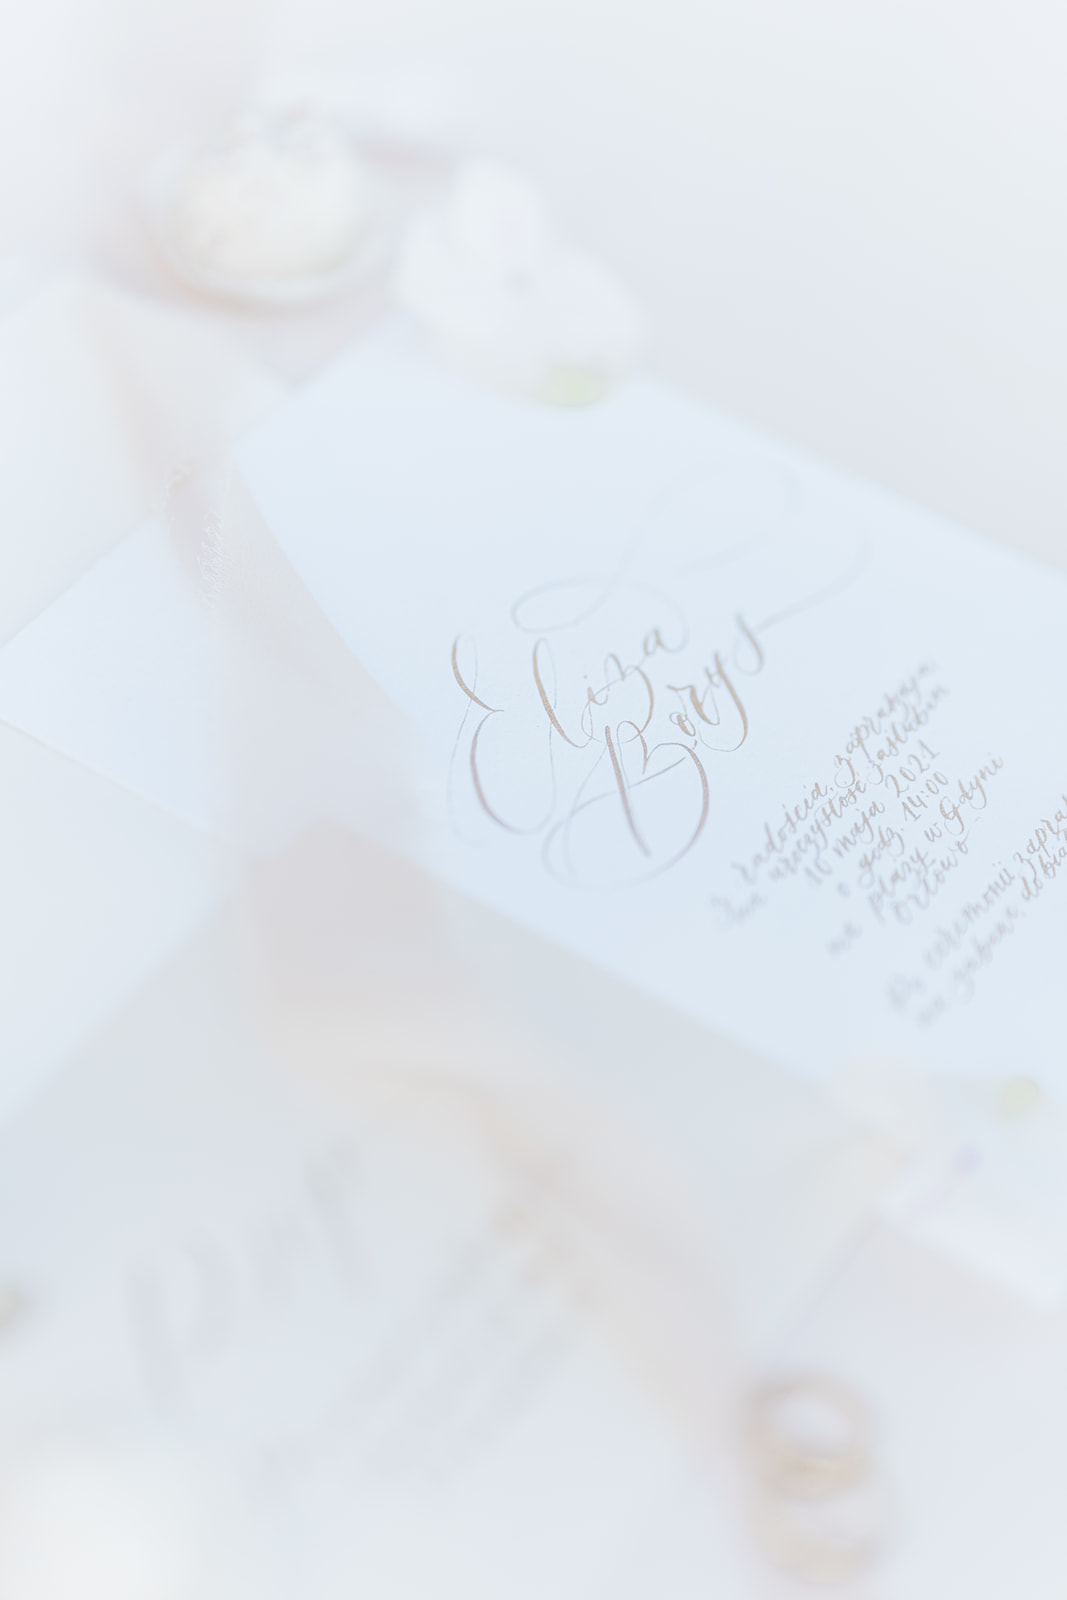 Sesja stylizowana Pastelowe Pola | Portfolio Weddings by Caroline - agencja ślubna